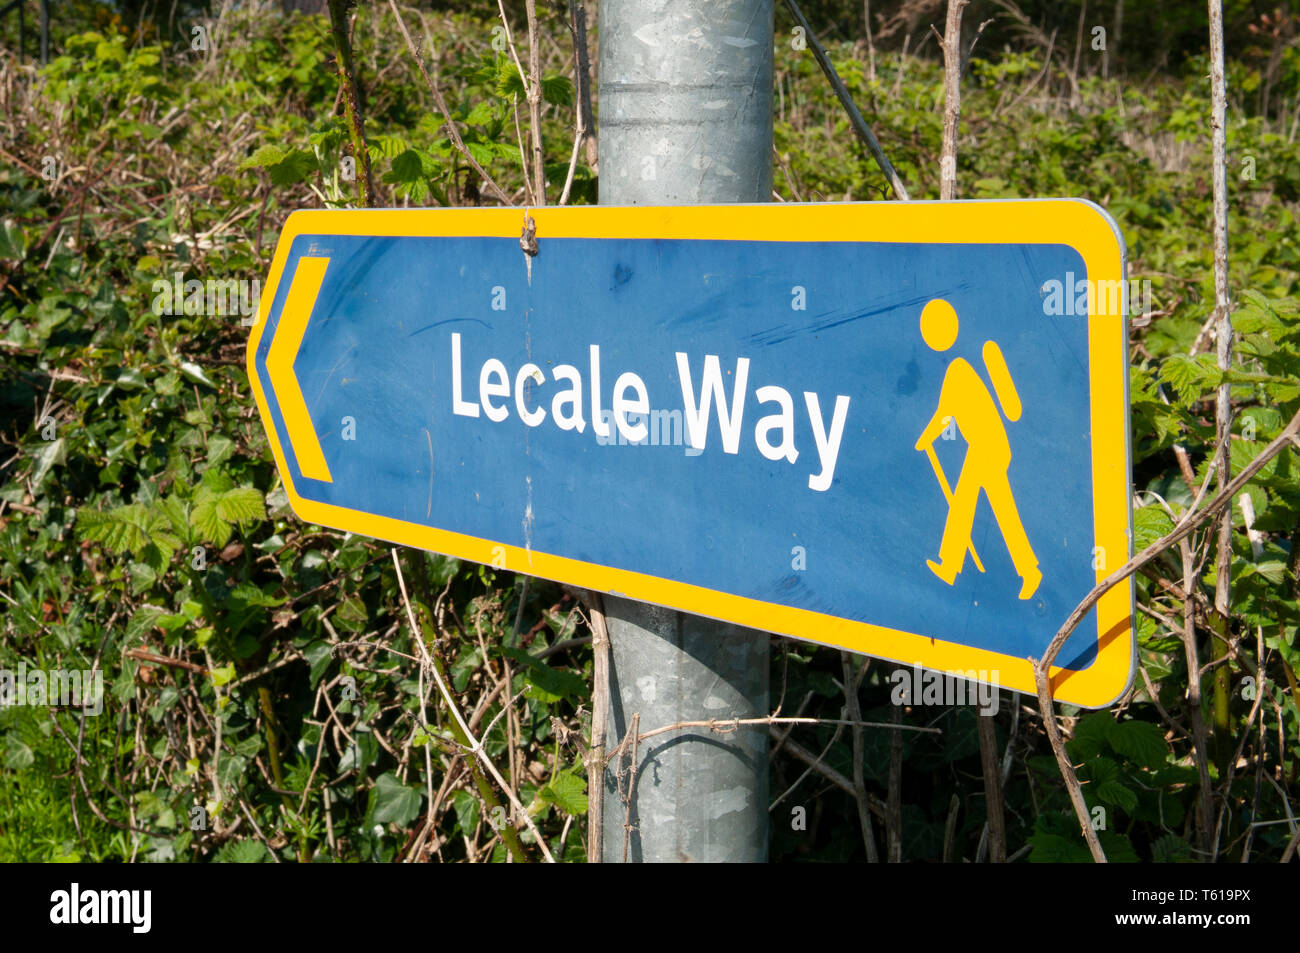 Inscrivez-vous pour la manière Lecale, un 40 km Marche et vélo route autour de County Down, retraçant l'itinéraire de Saint Patrick. Banque D'Images